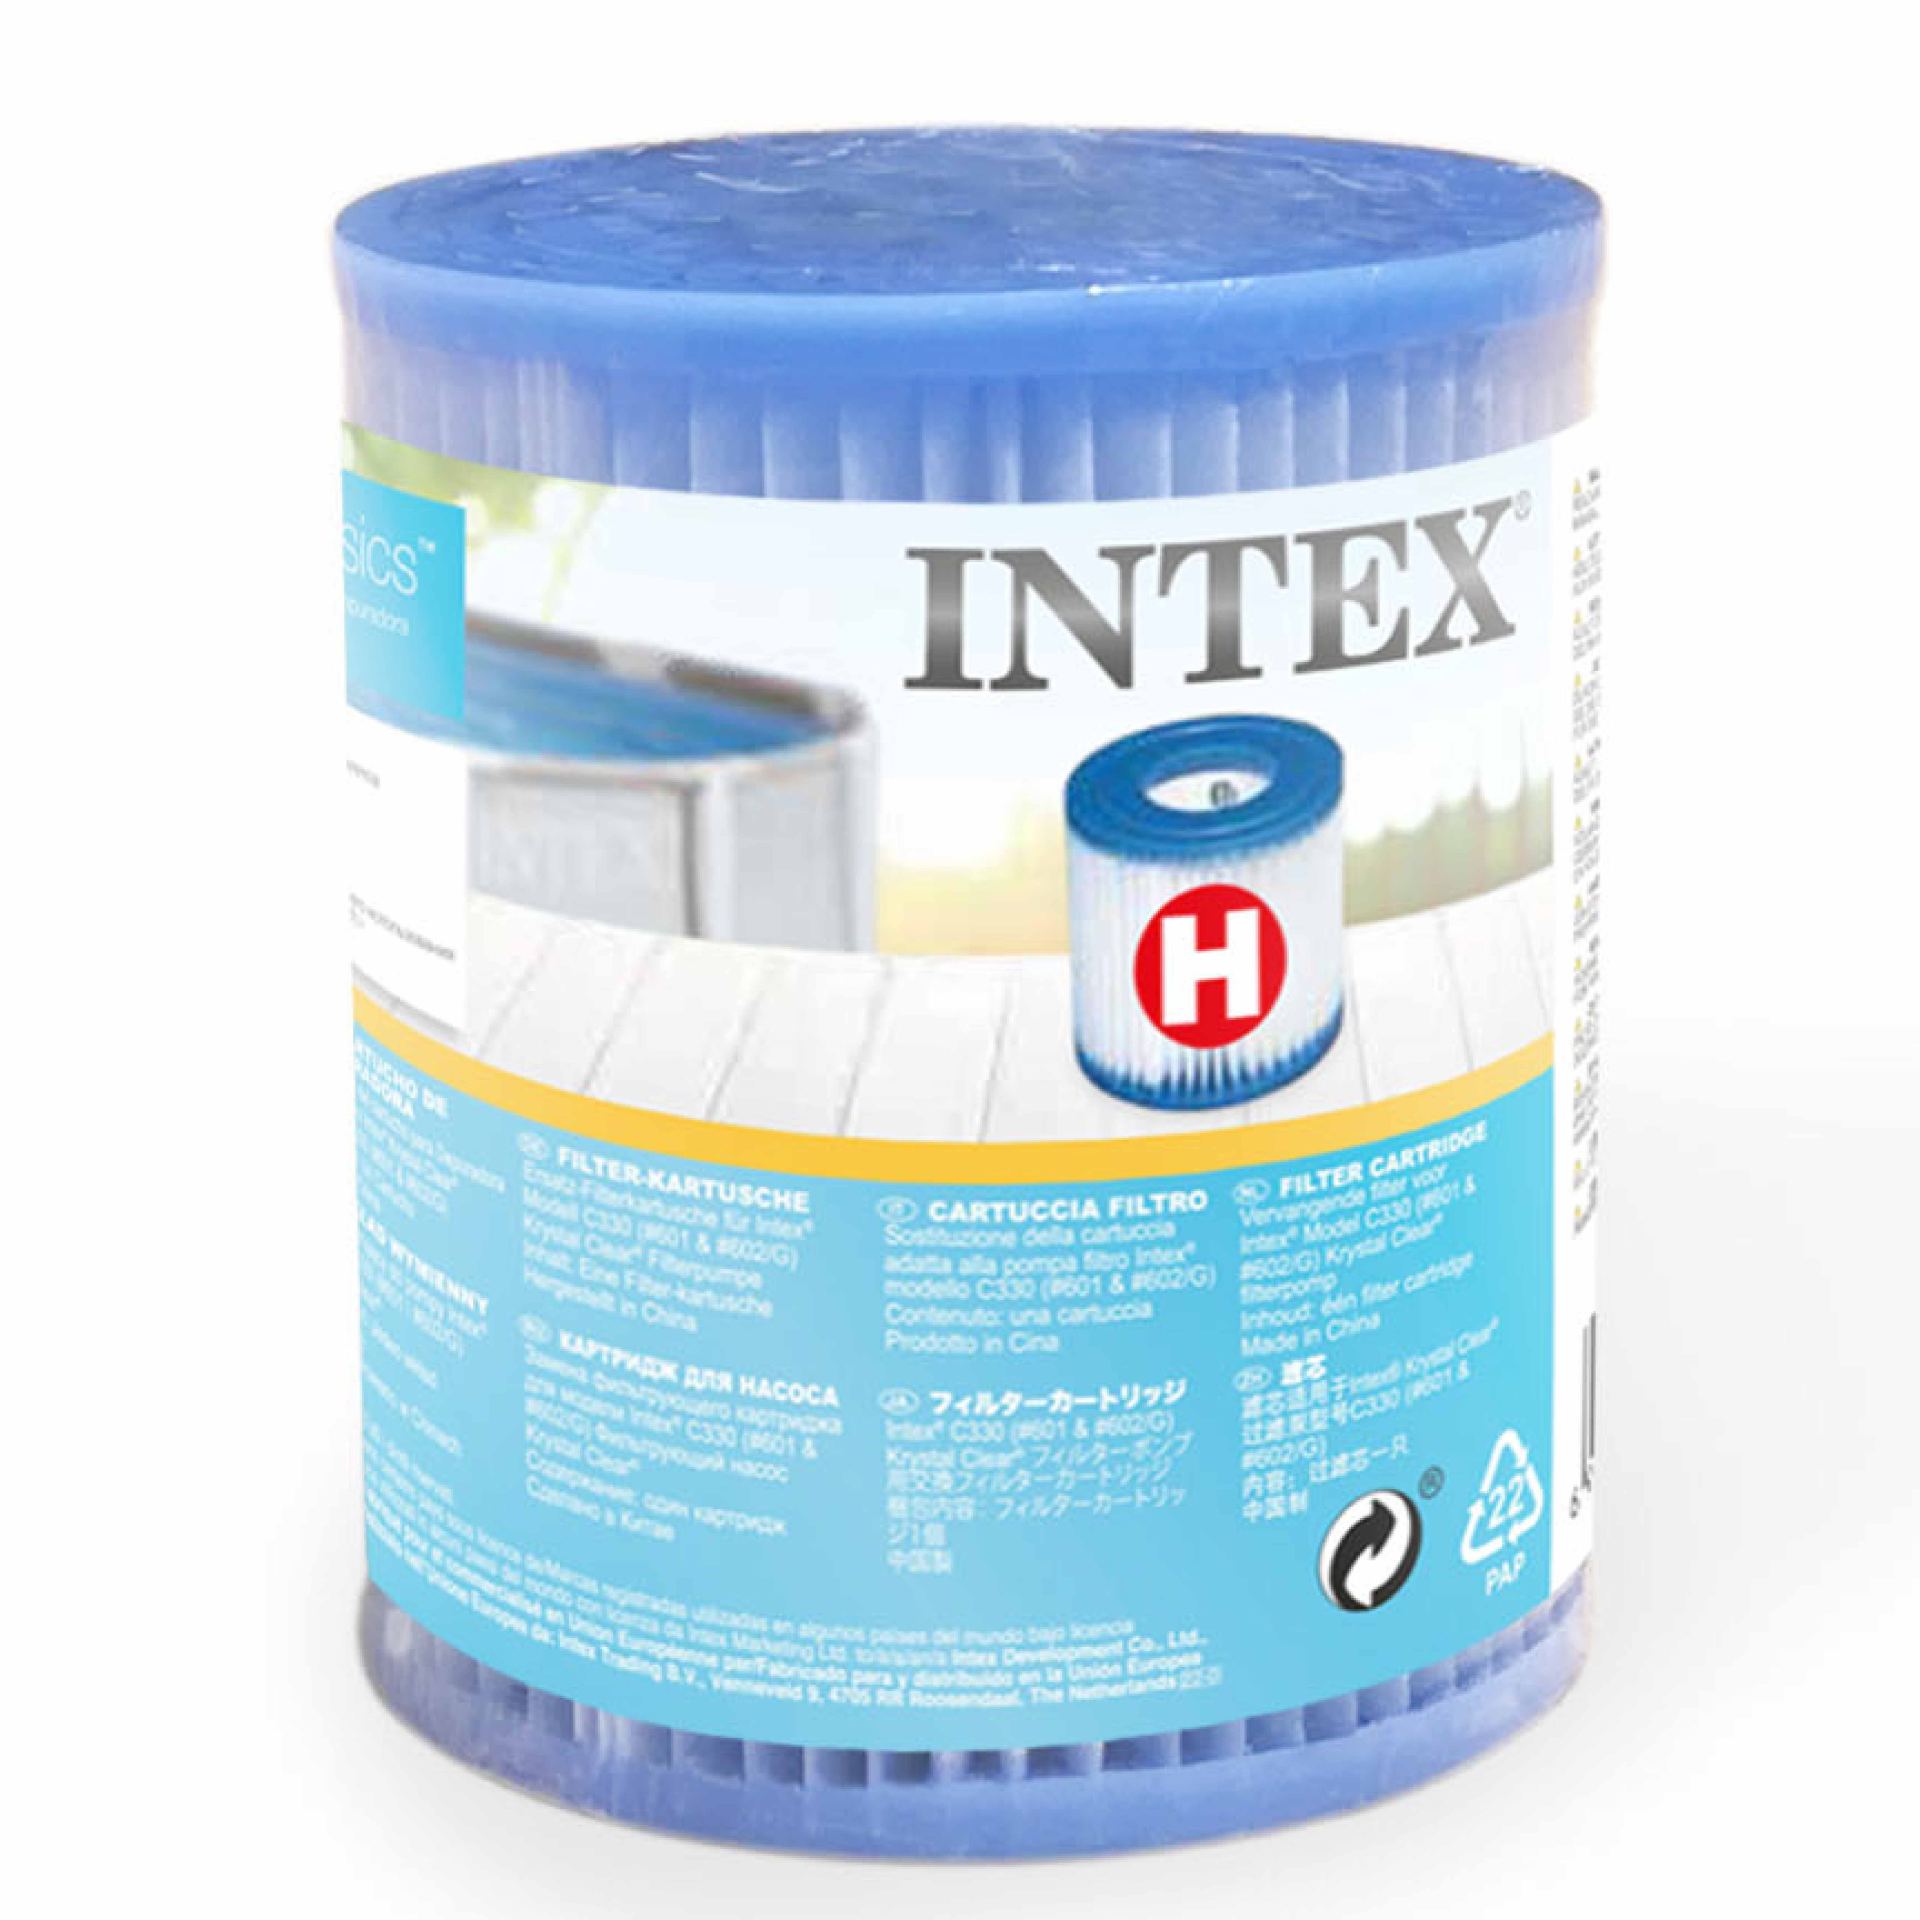 Intex filter cartridge H